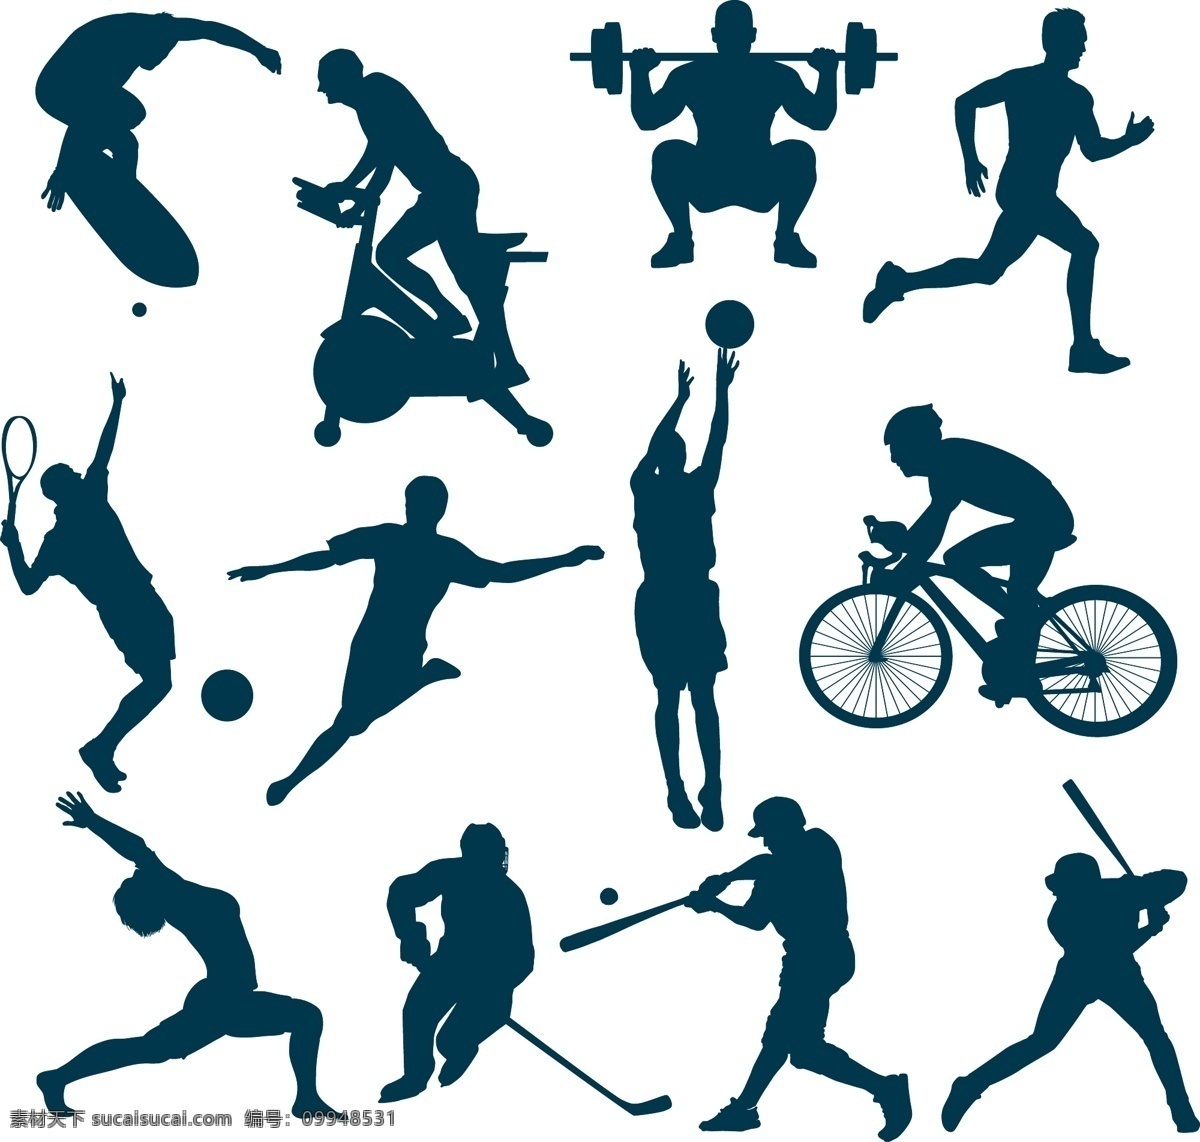 体育运动 奥运会 比赛 运动海报 运动比赛海报 运动员 户外运动 室内运动 运动俱乐部 卡通设计